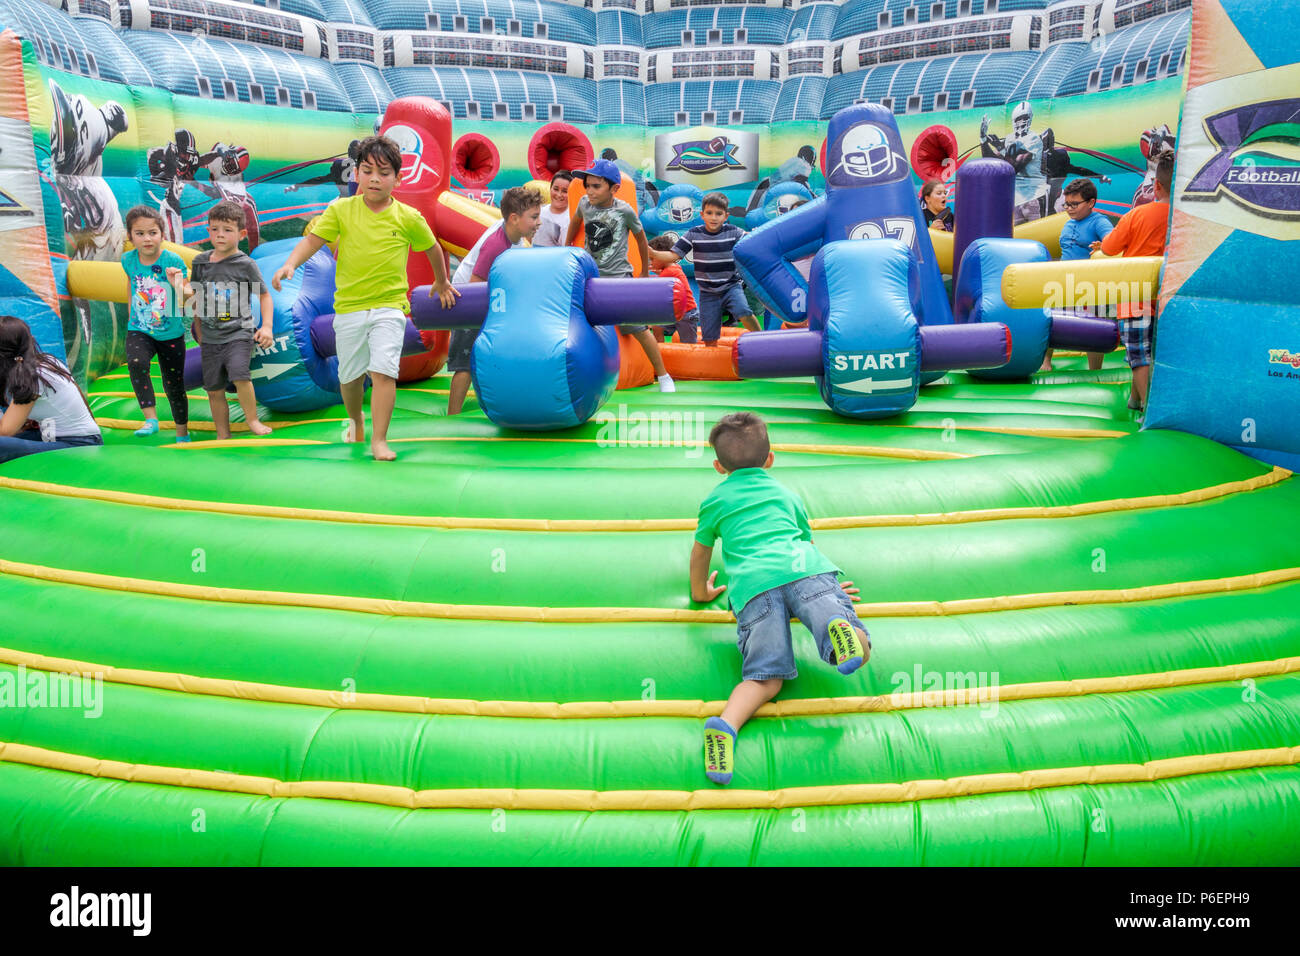 Juegos inflables para niños fotografías e imágenes de alta resolución -  Alamy